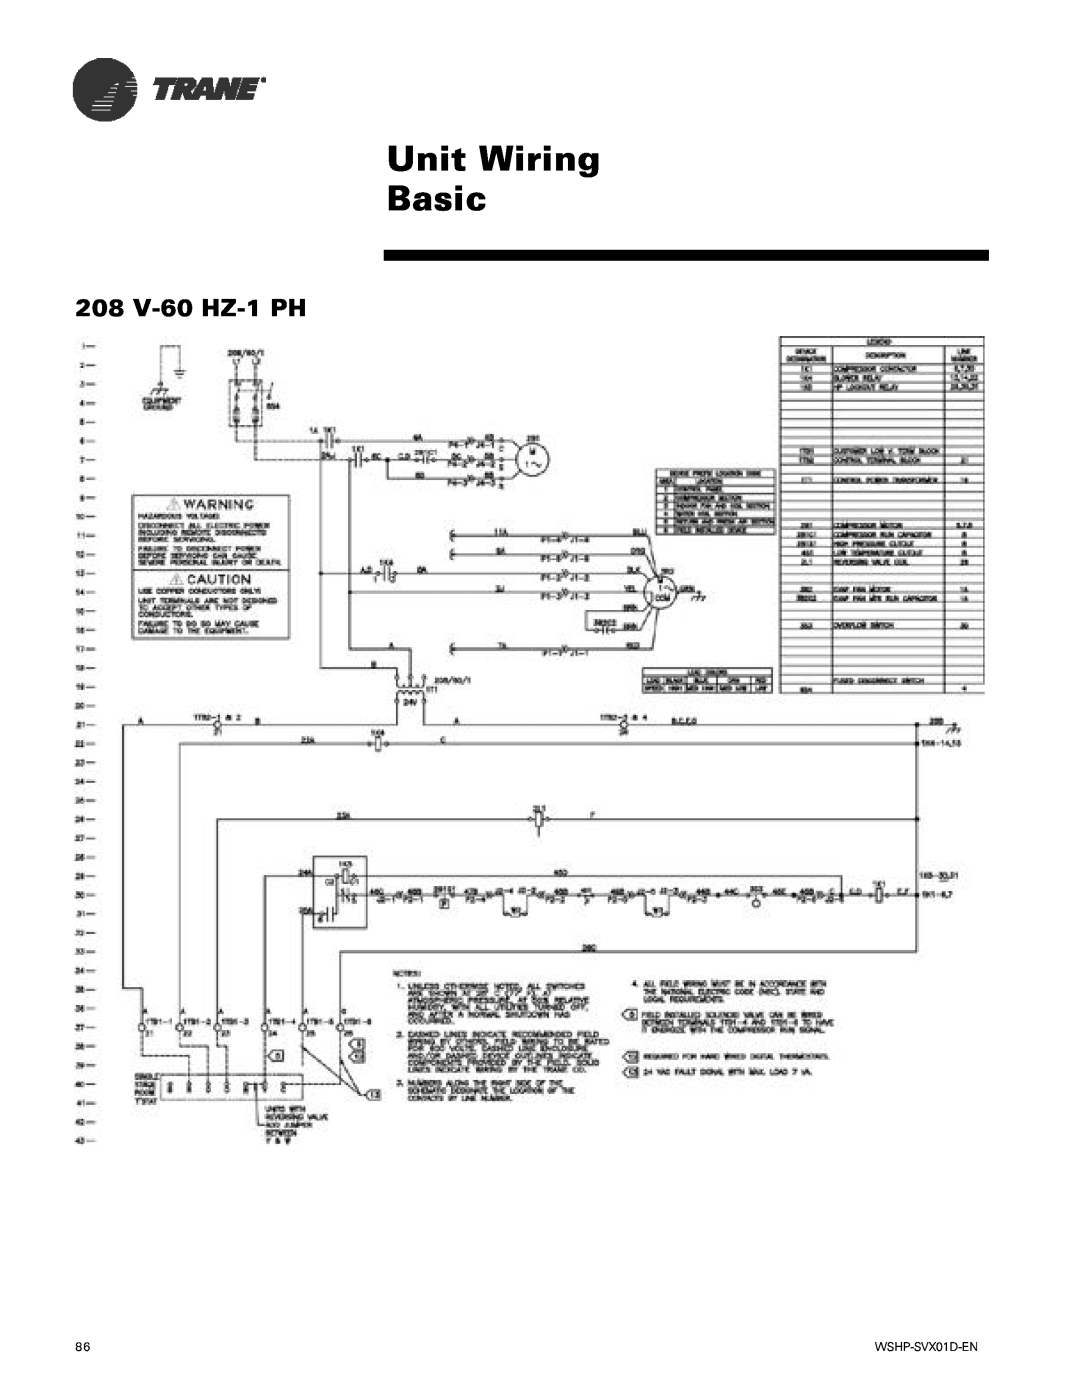 Trane GEH, GEV manual Unit Wiring Basic, 208 V-60 HZ-1PH 